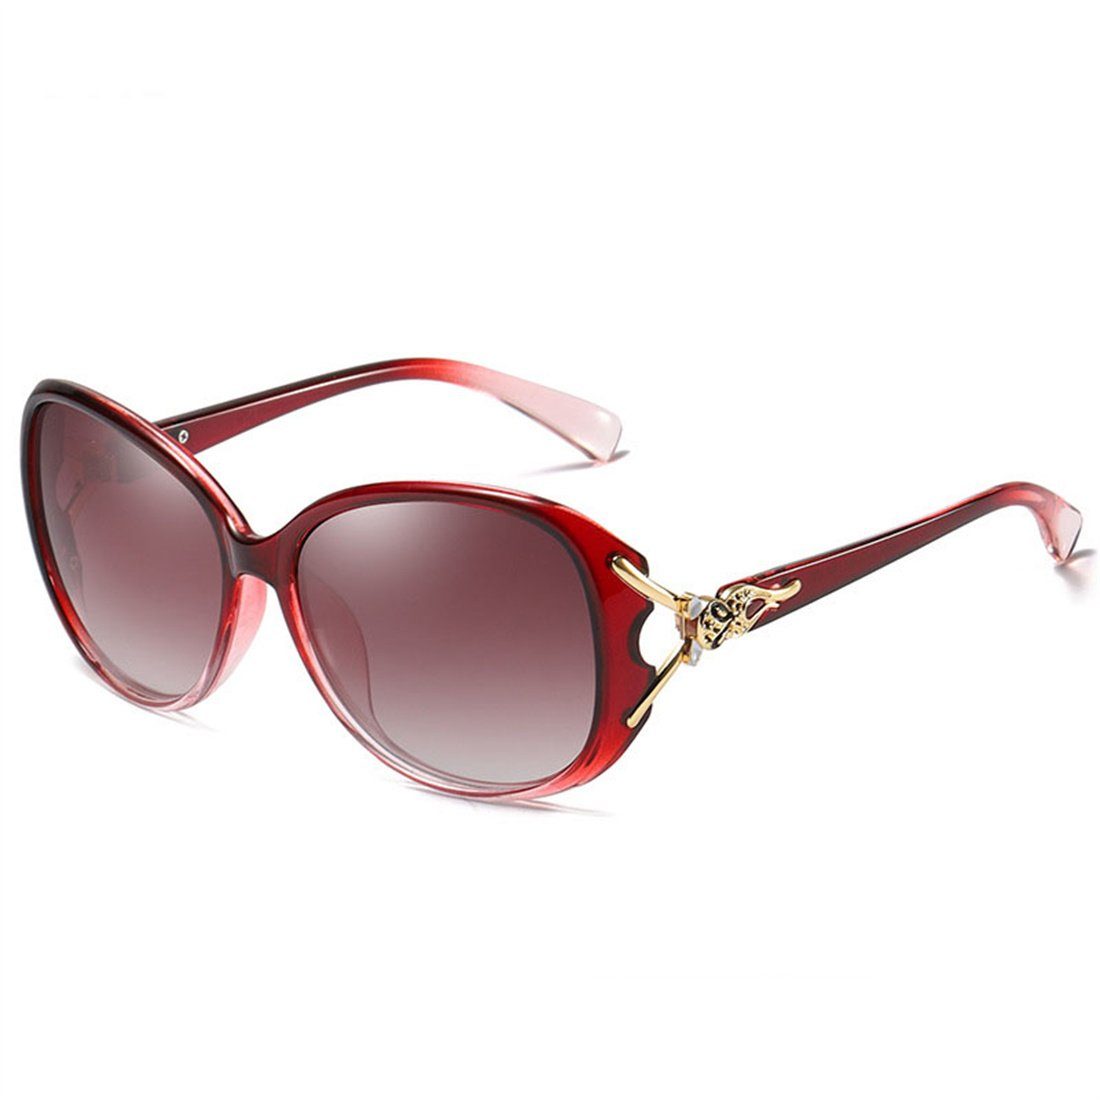 Sonnenbrille DÖRÖY Outdoor-Sonnenbrille Rot Damen-Sommer-Sonnenbrille, Polarisierende